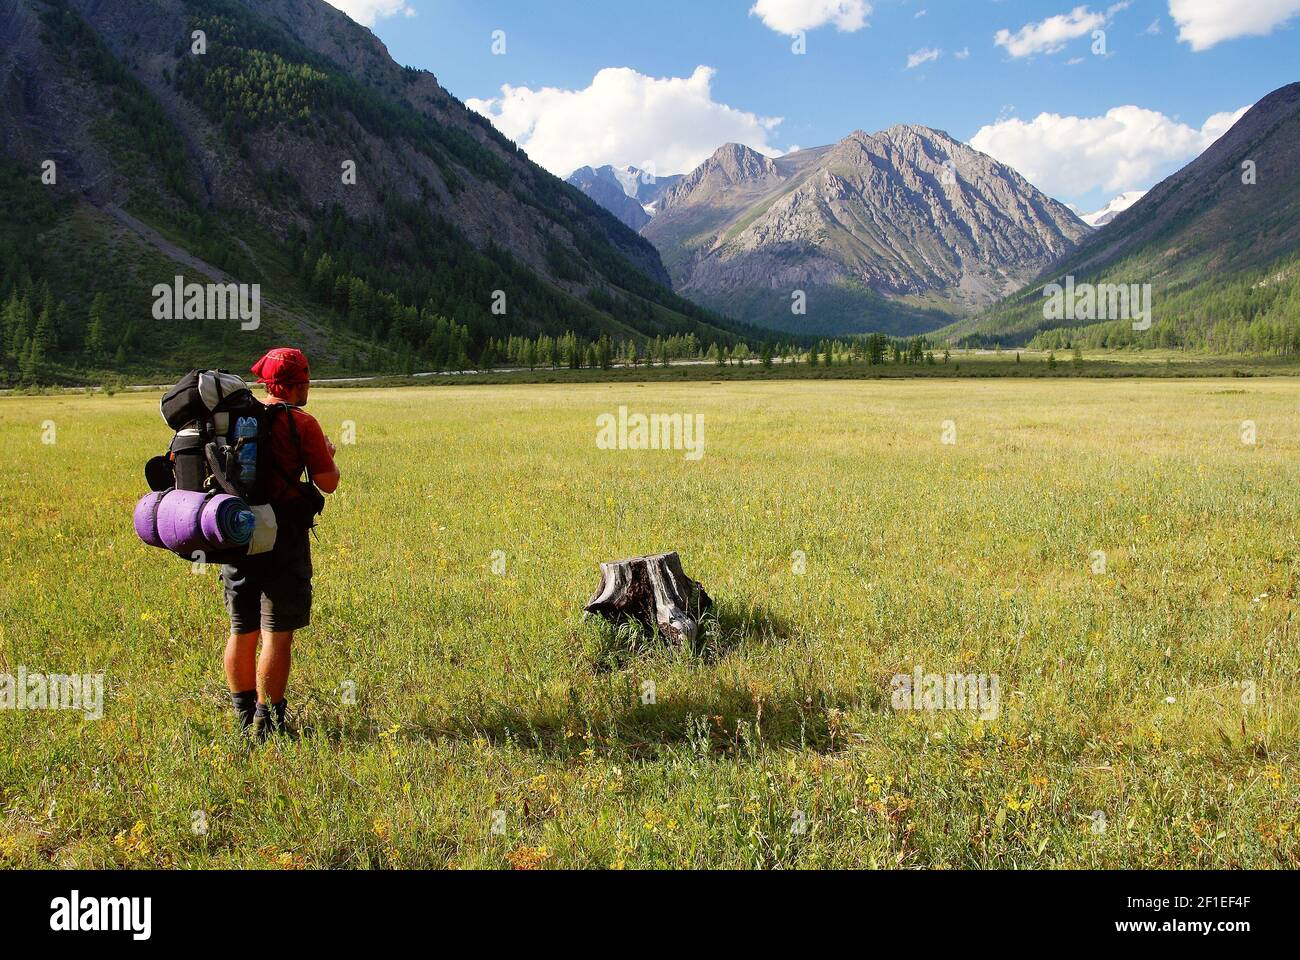 Vue de la gamme Altay - Homme avec sac à dos sur la prairie - vallée de Karagem - Russie Banque D'Images